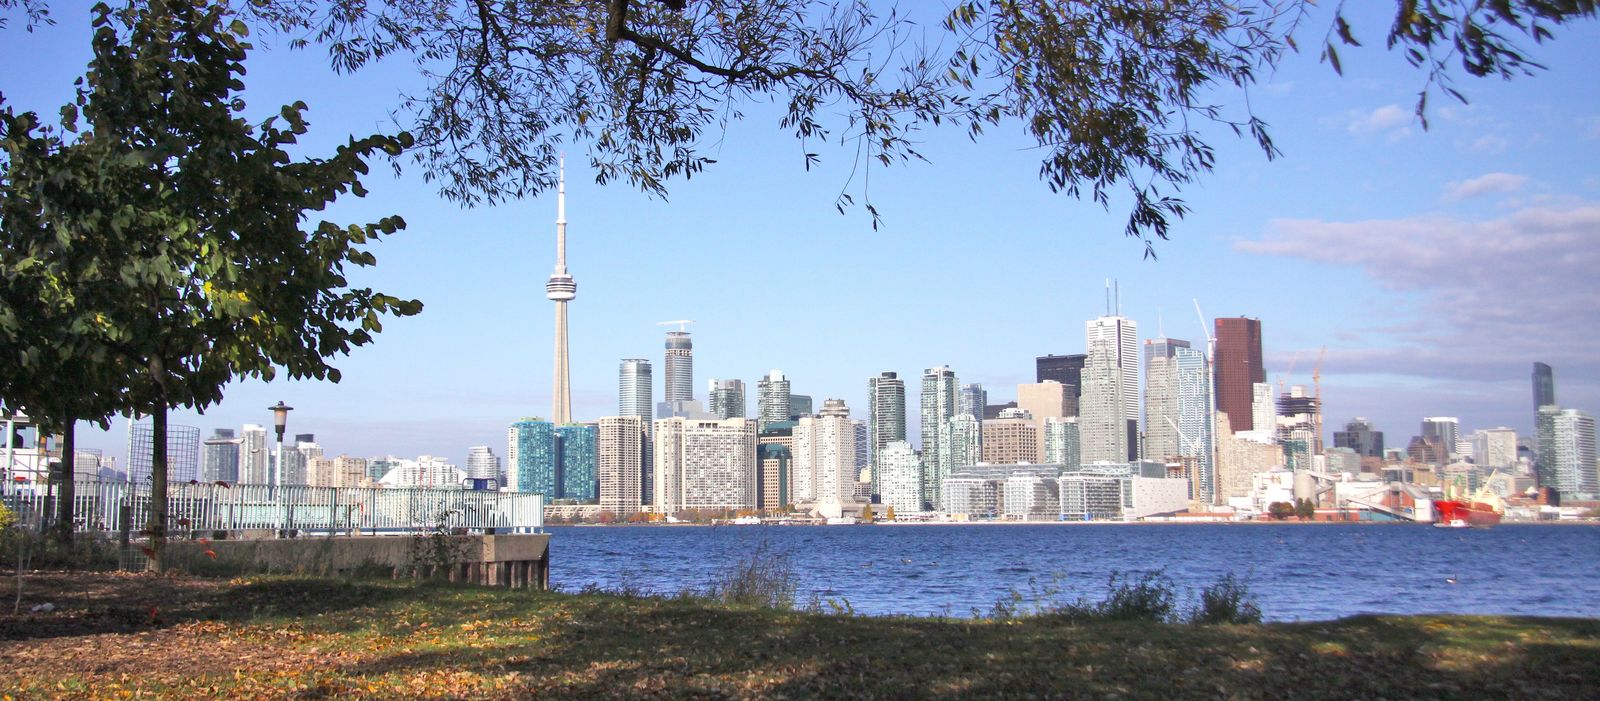 Torontos Skyline von Wars Island, Ontario